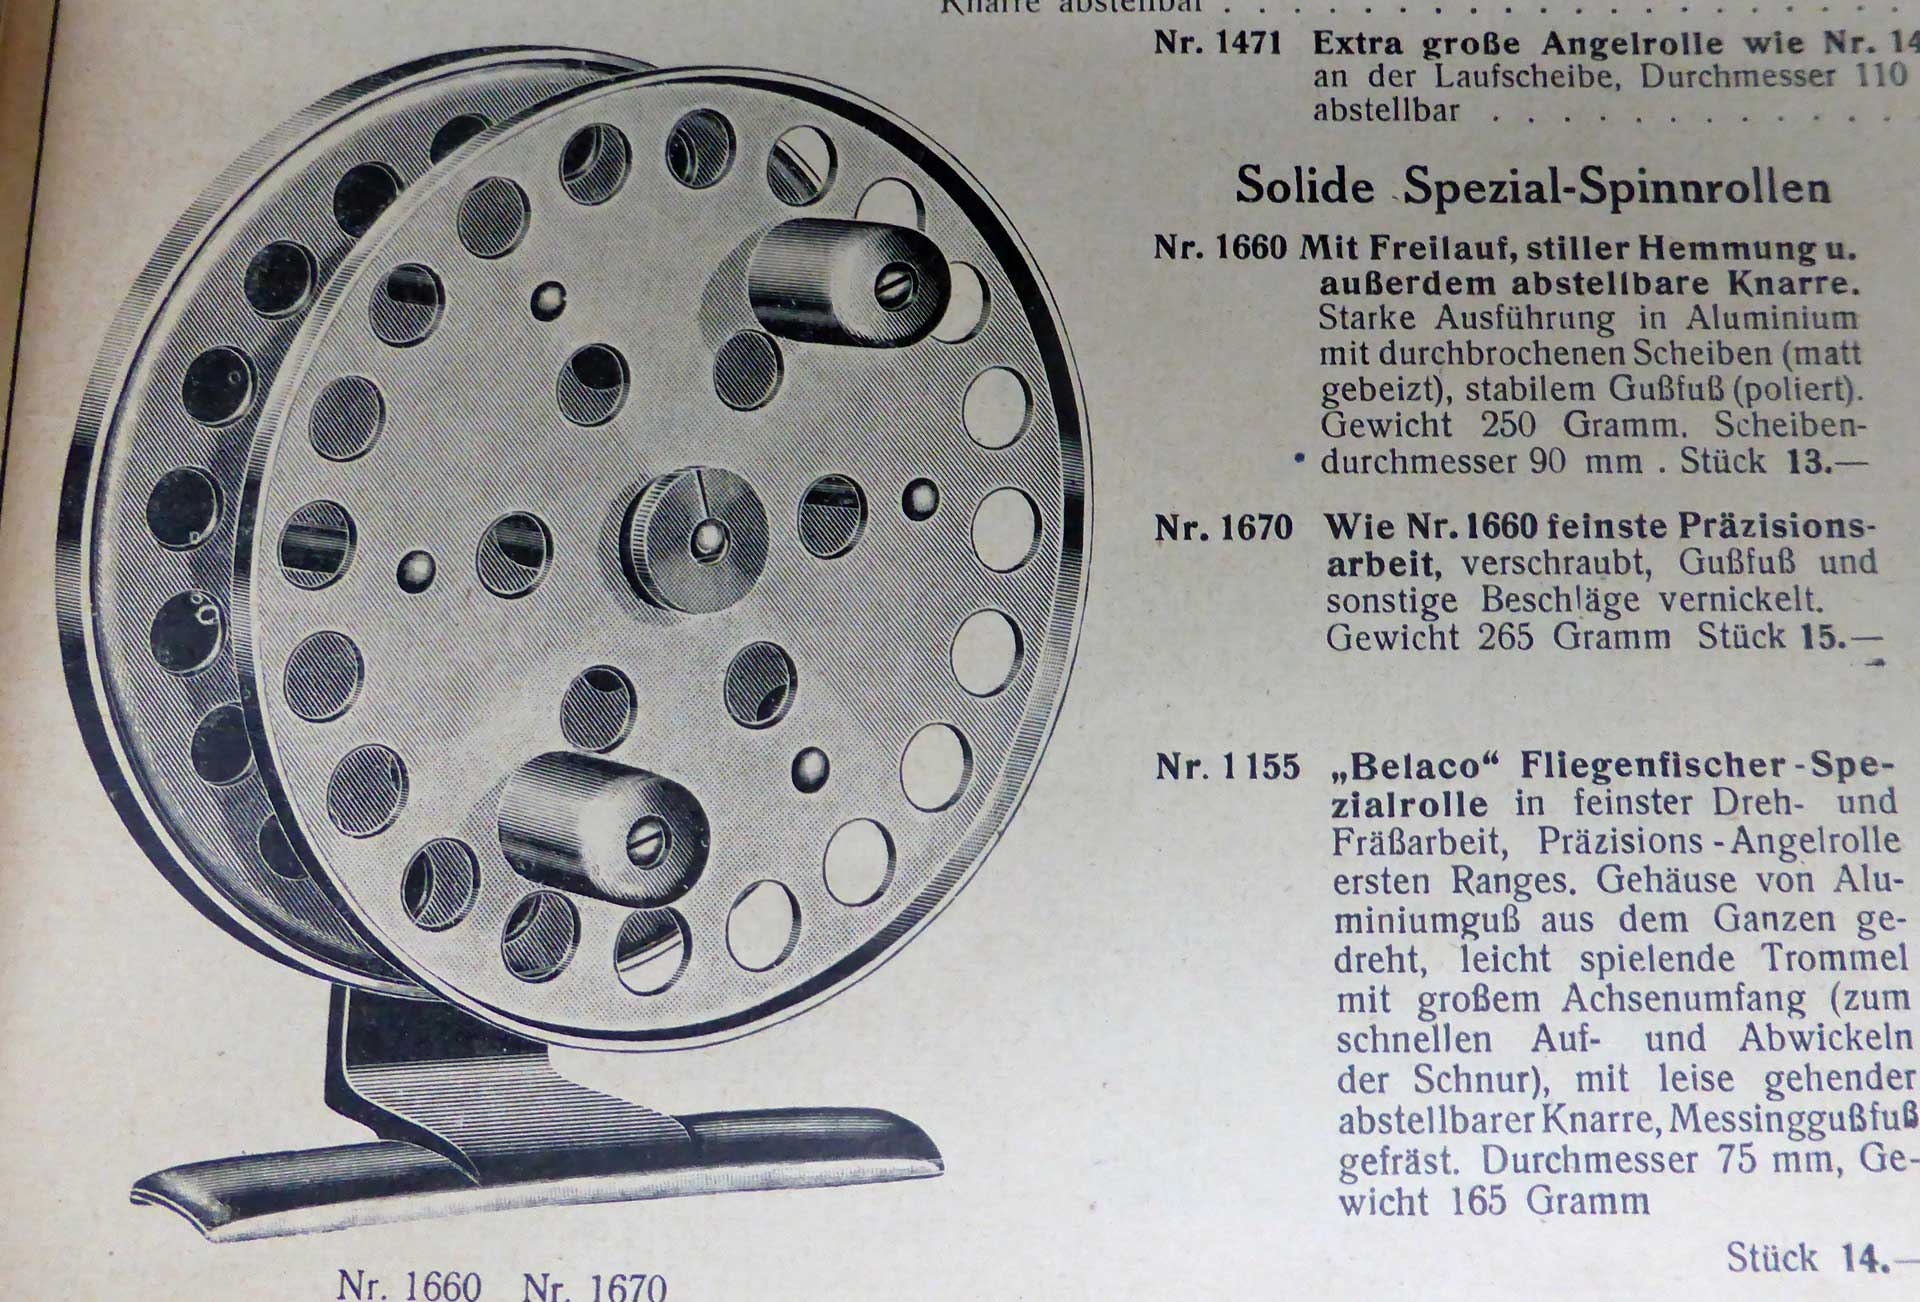 Zum Vergleich: Das Vorläufermodell im Belaco-Katalog von 1932, hier überlappt die Rückwand noch die Spule, die Griffe sind zylindrisch.